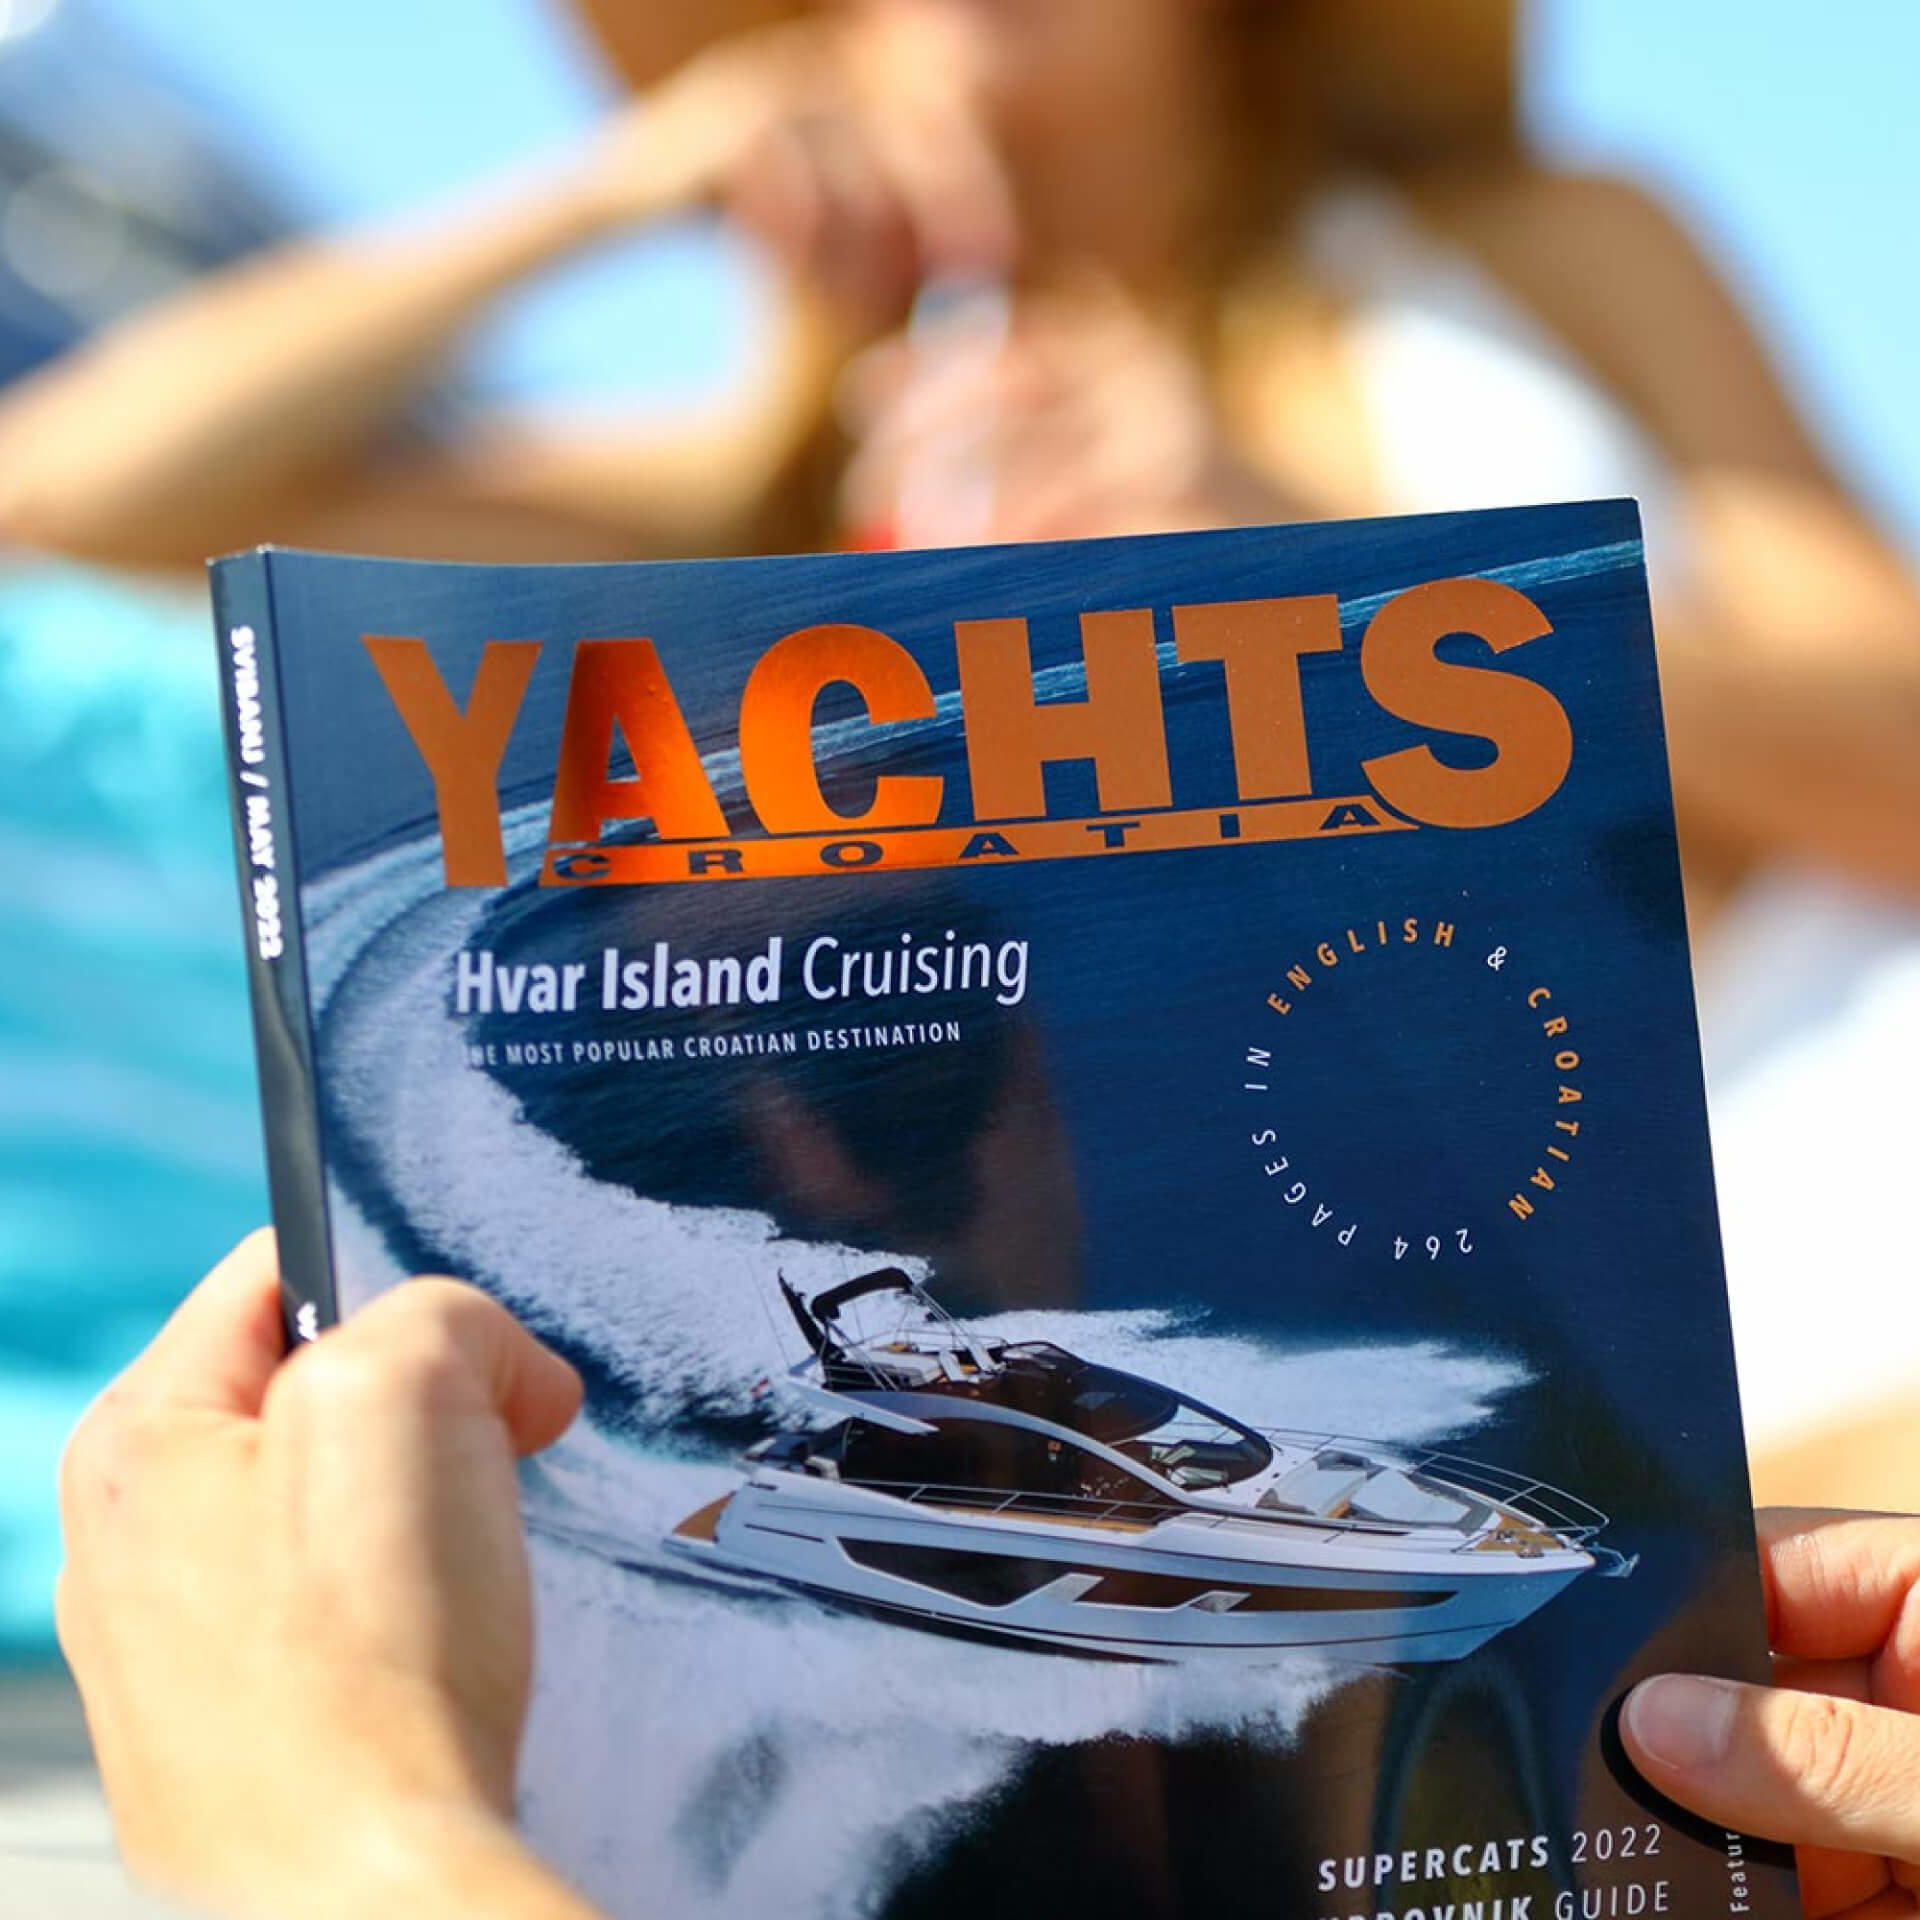 Promoted by Yachts Croatia Magazine